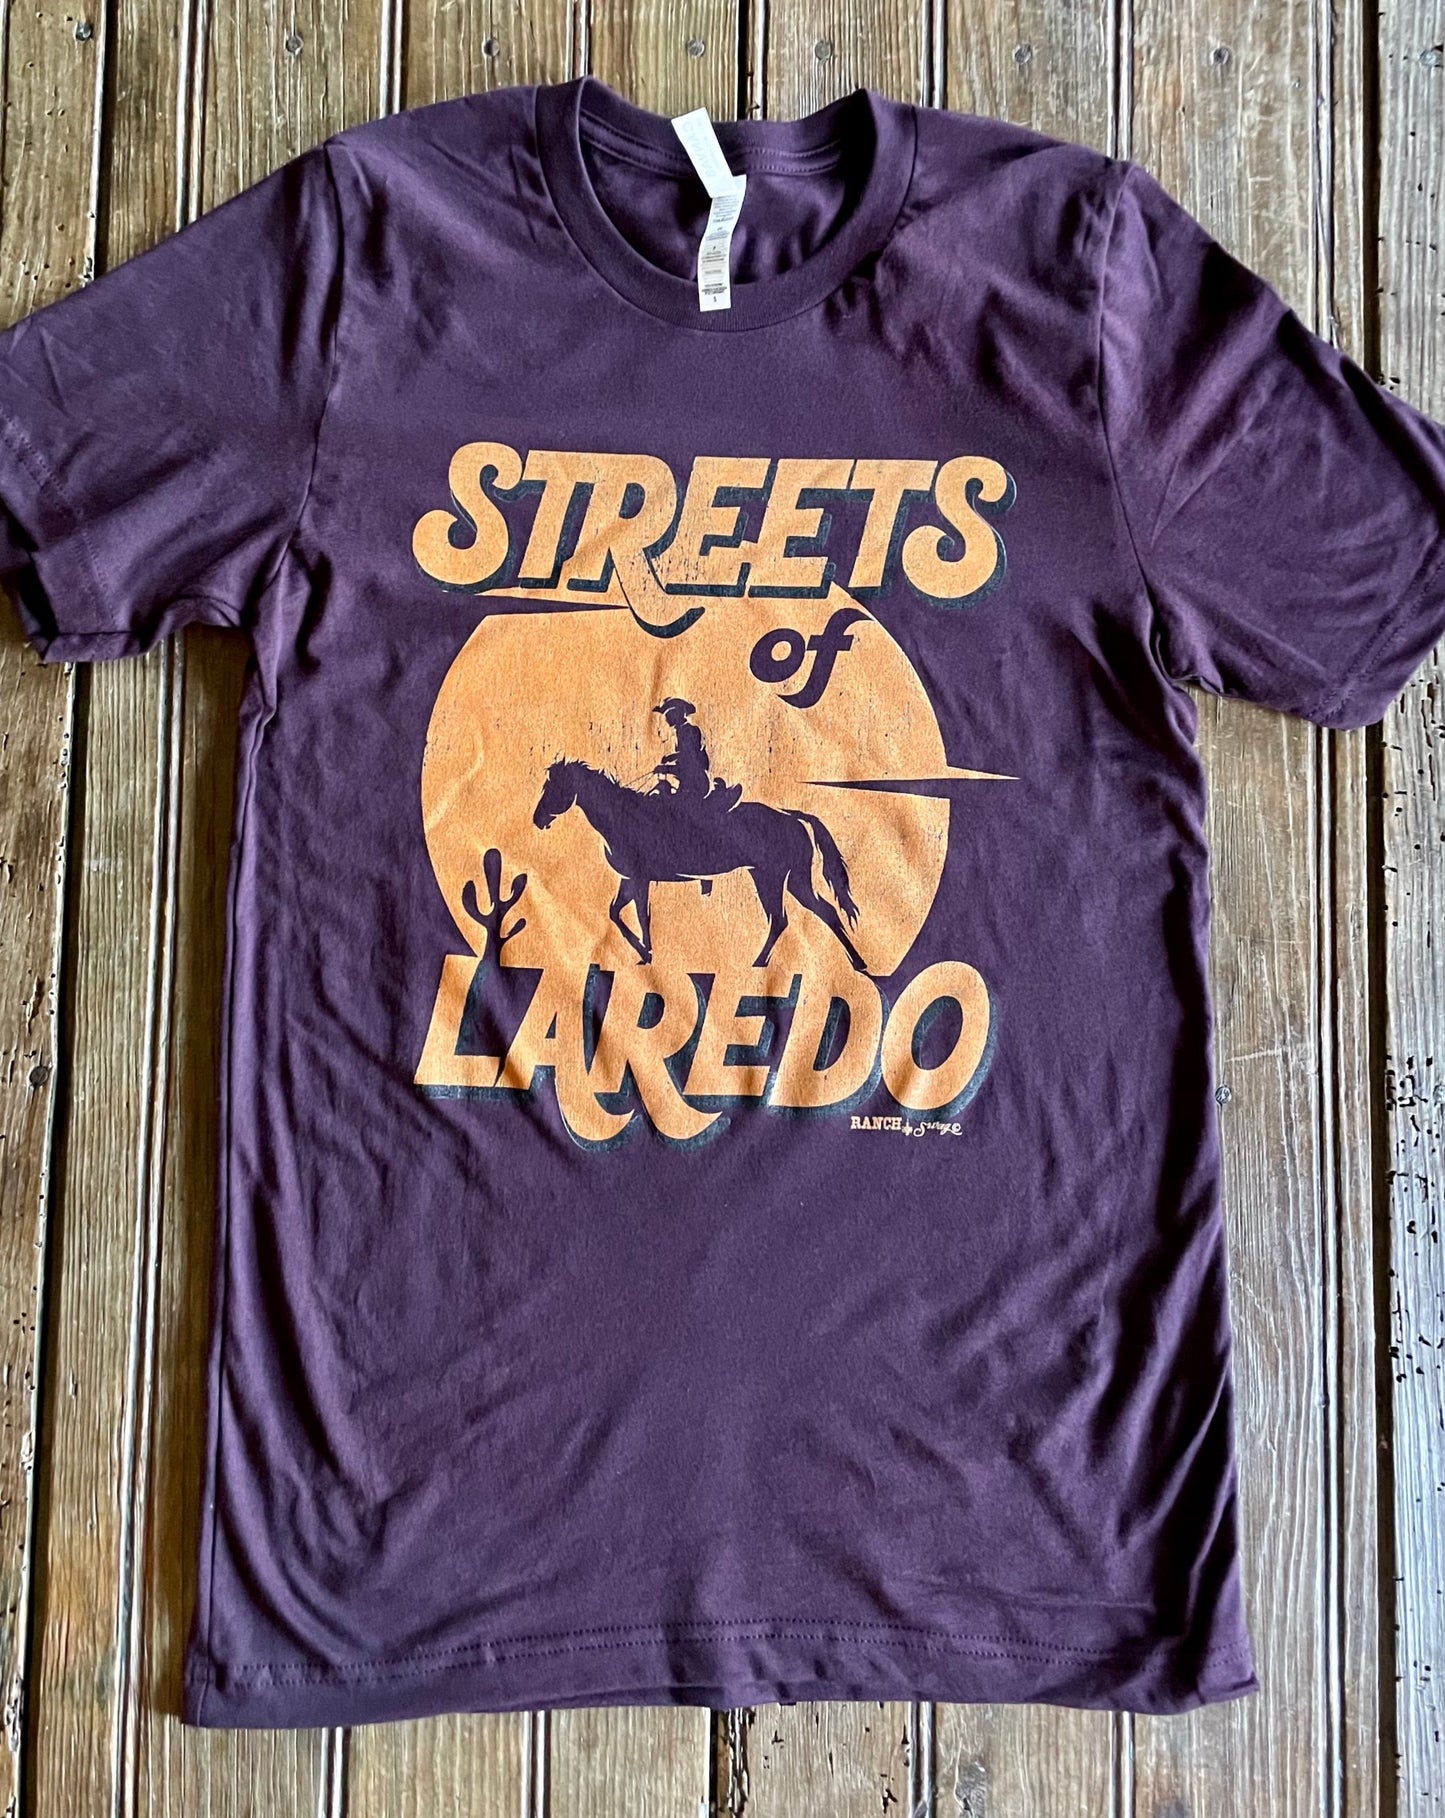 Street of Laredo Tee SALE